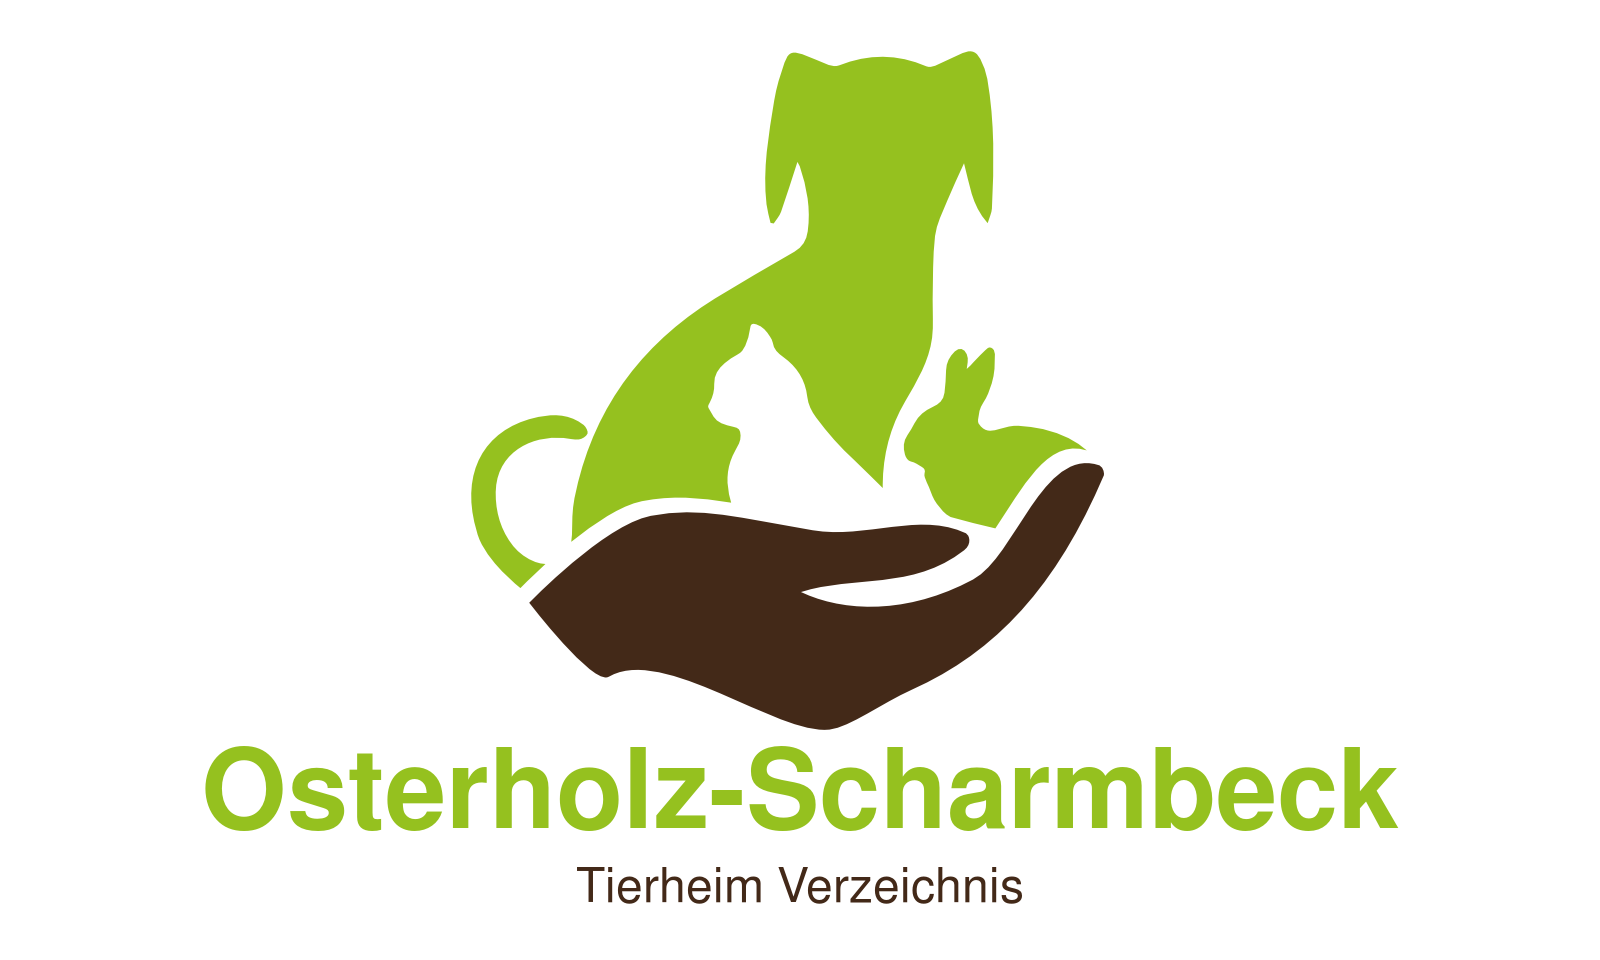 Tierheim Osterholz-Scharmbeck